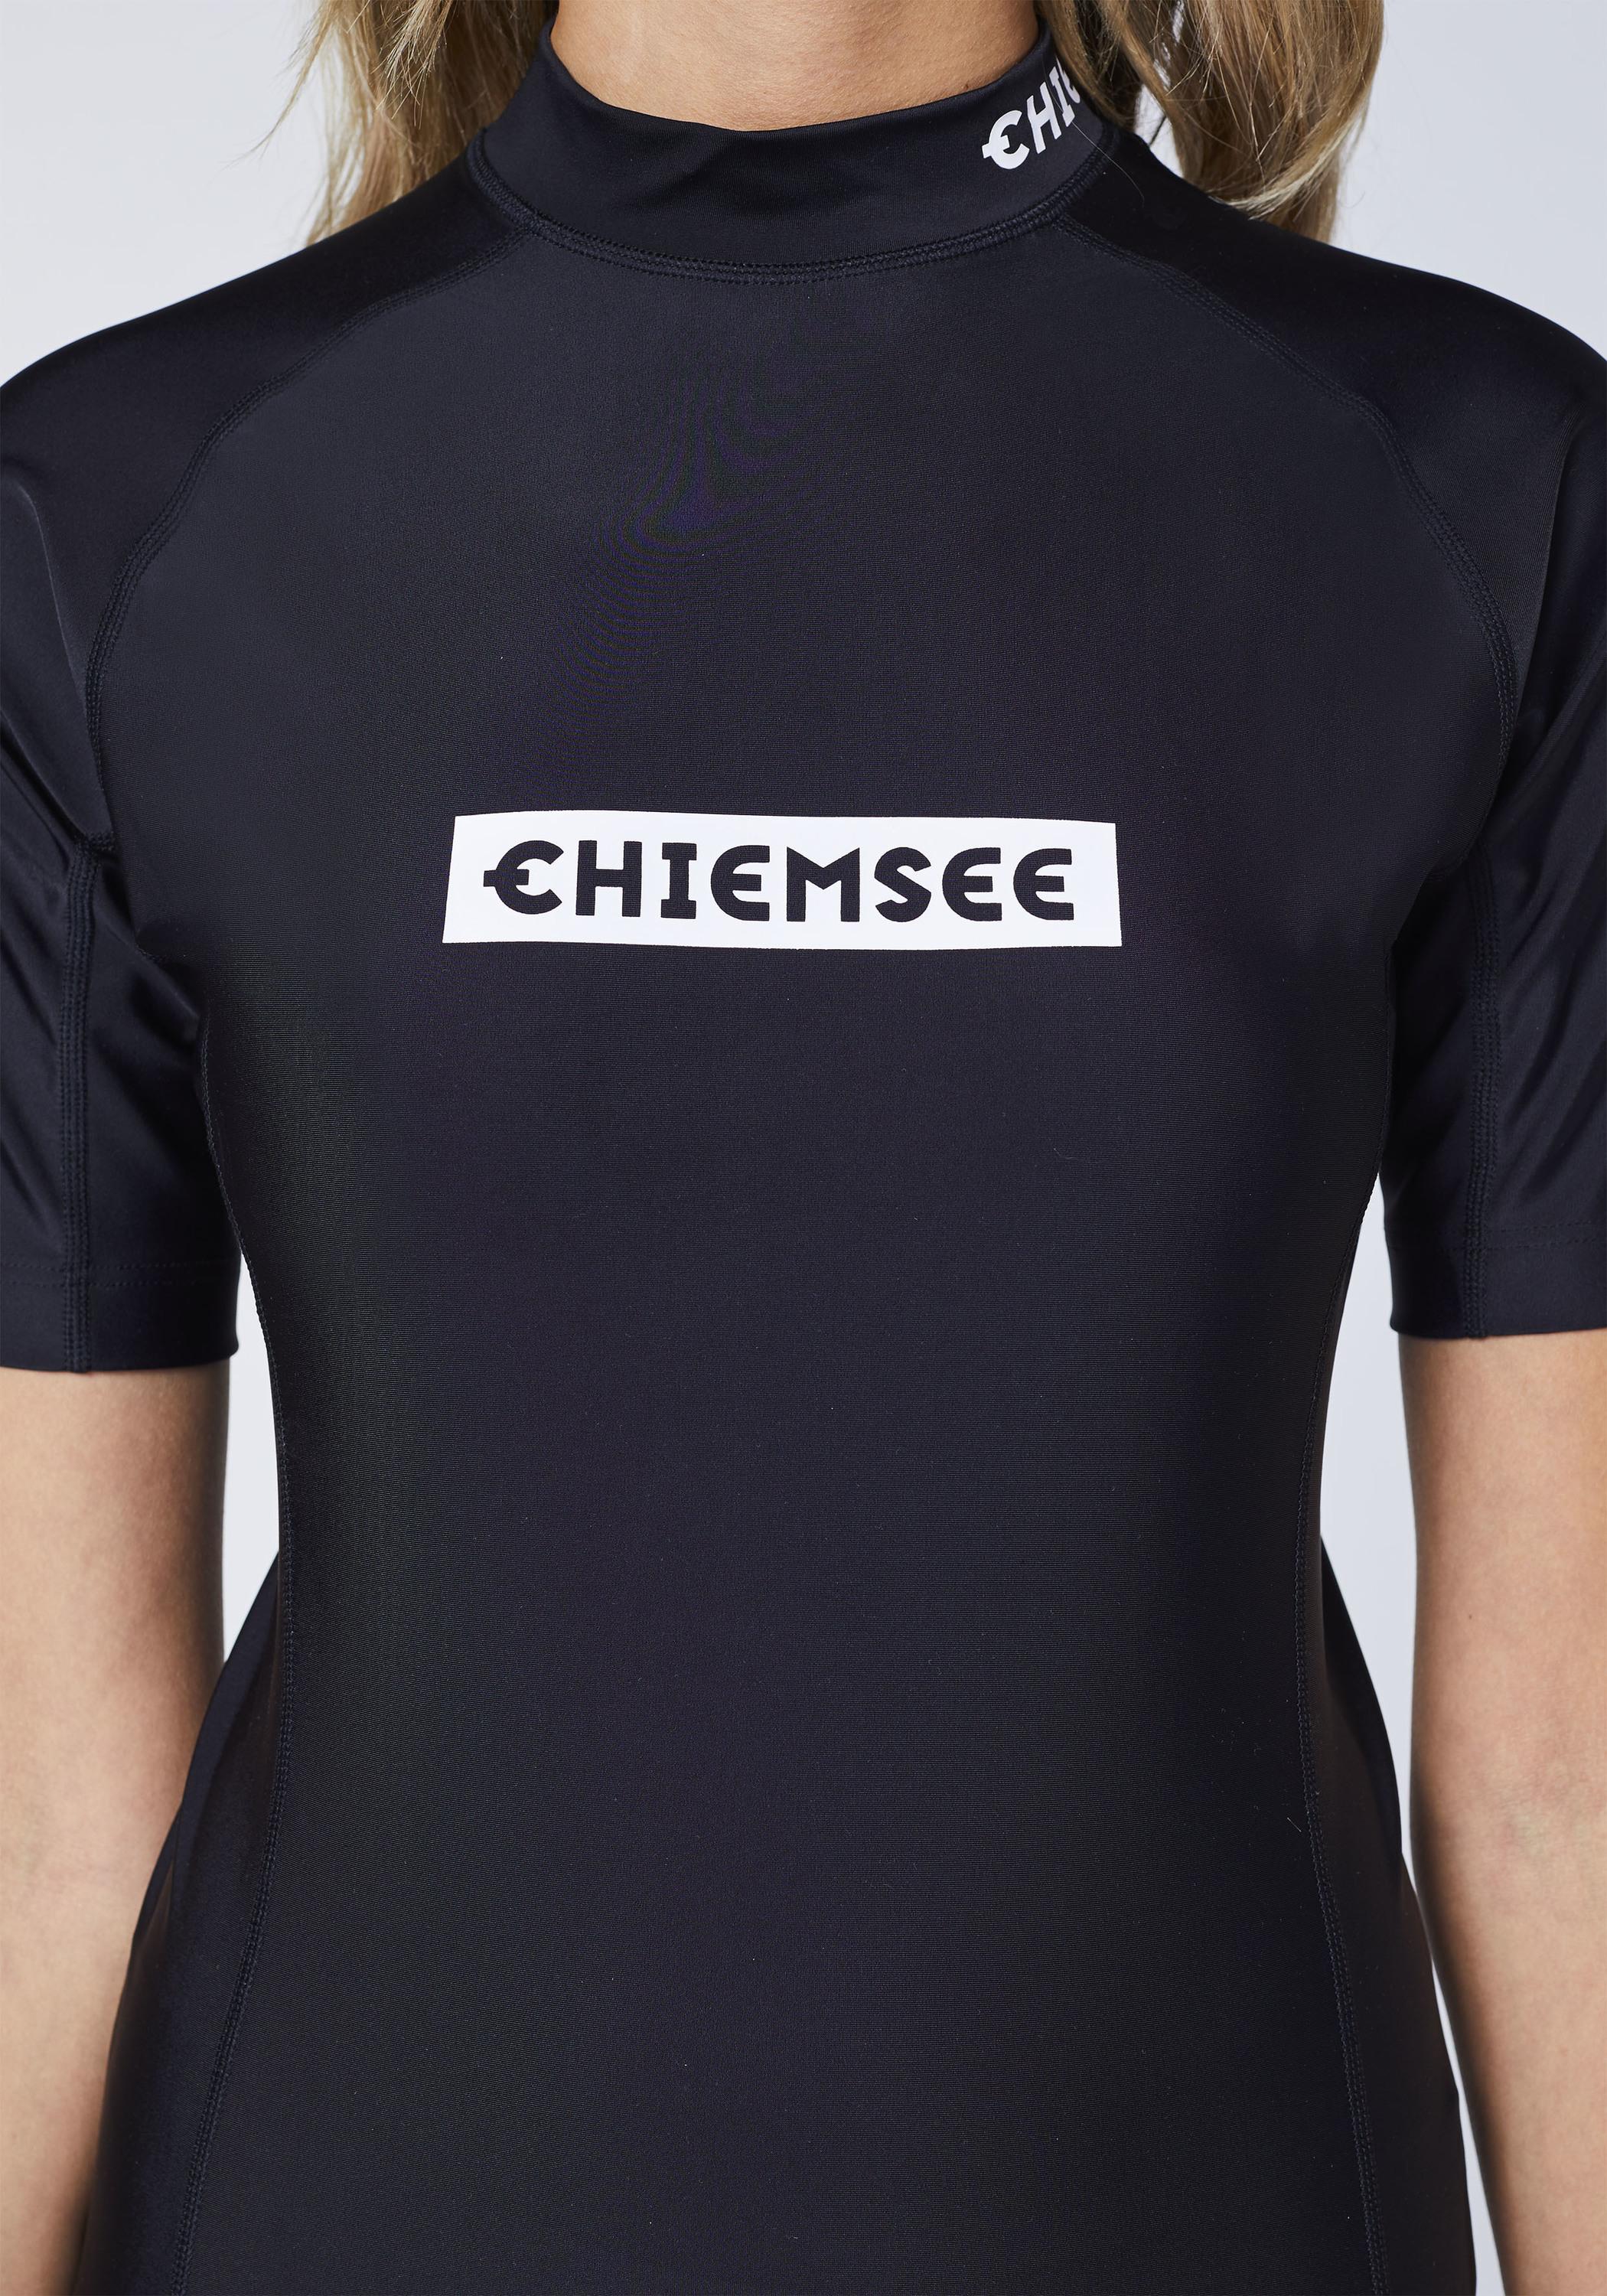 Black von SportScheck Shop Surf Online kaufen Badeshirt new im Shirt Chiemsee Deep